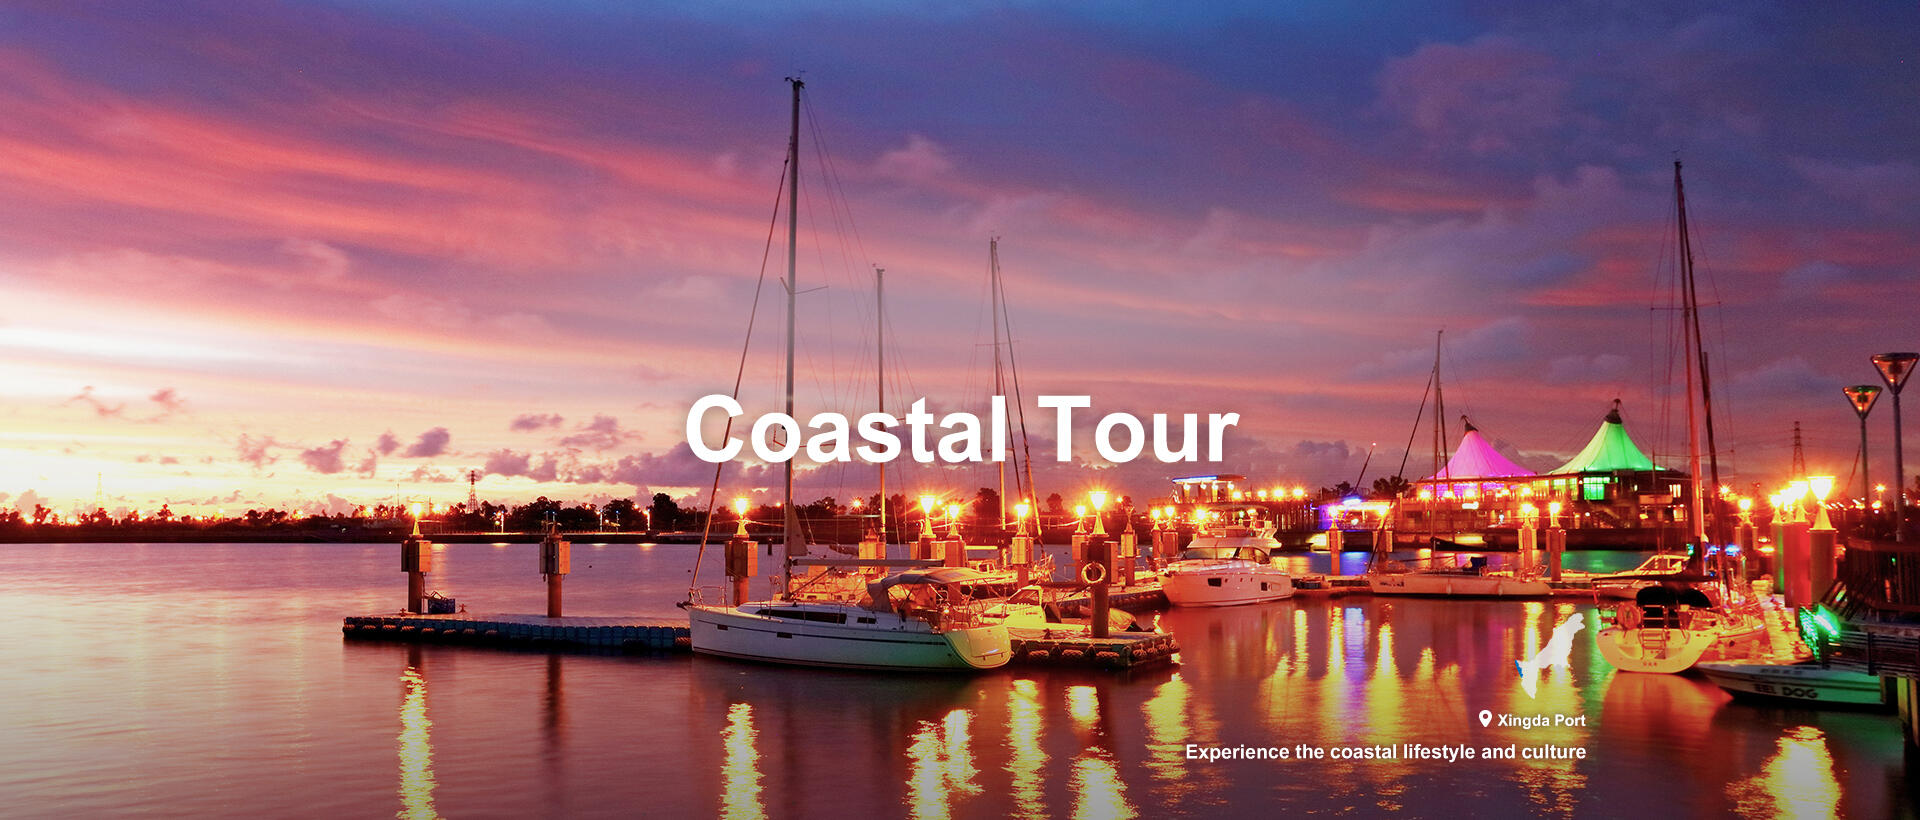 Coastal Tour